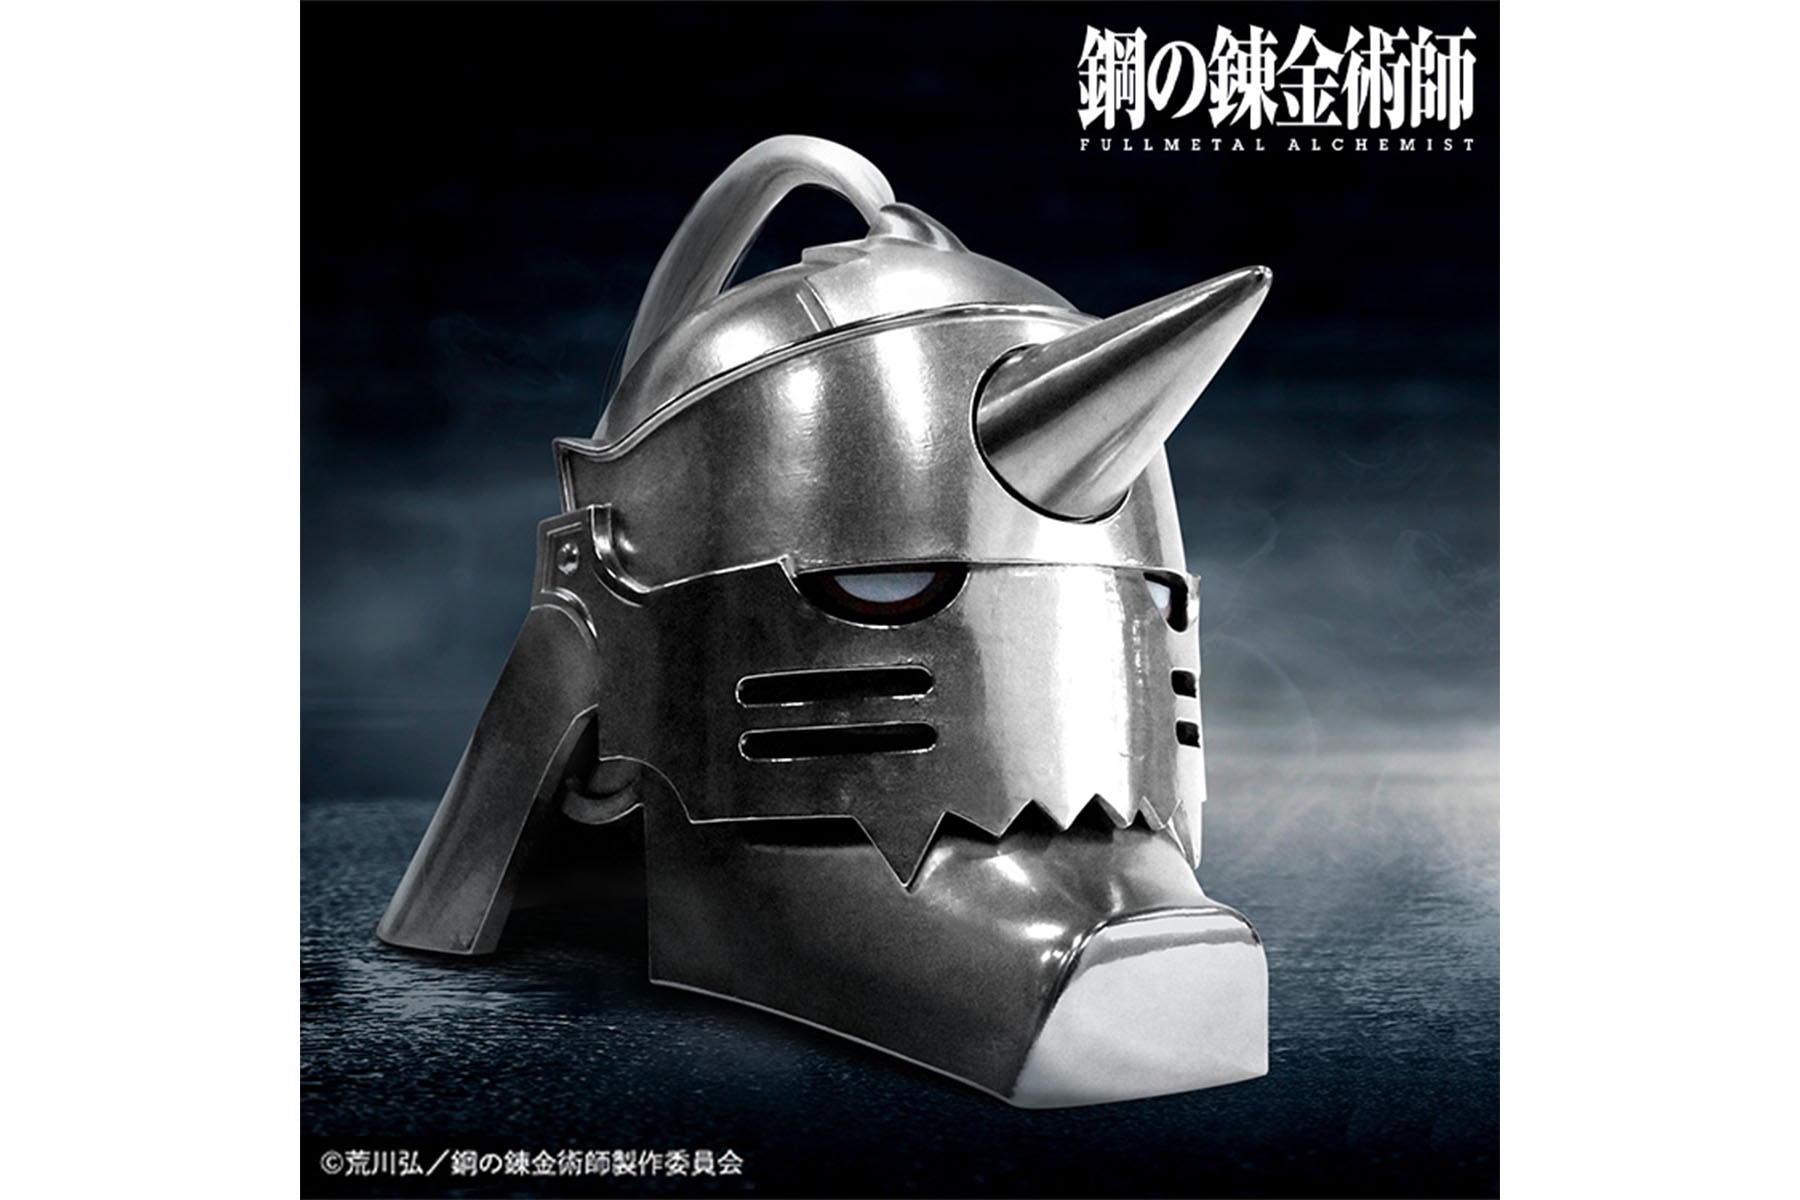 IRON FACTORY 推出《鋼之鍊金術師》阿爾馮斯·愛力克 1/1 比例不鏽鋼頭盔